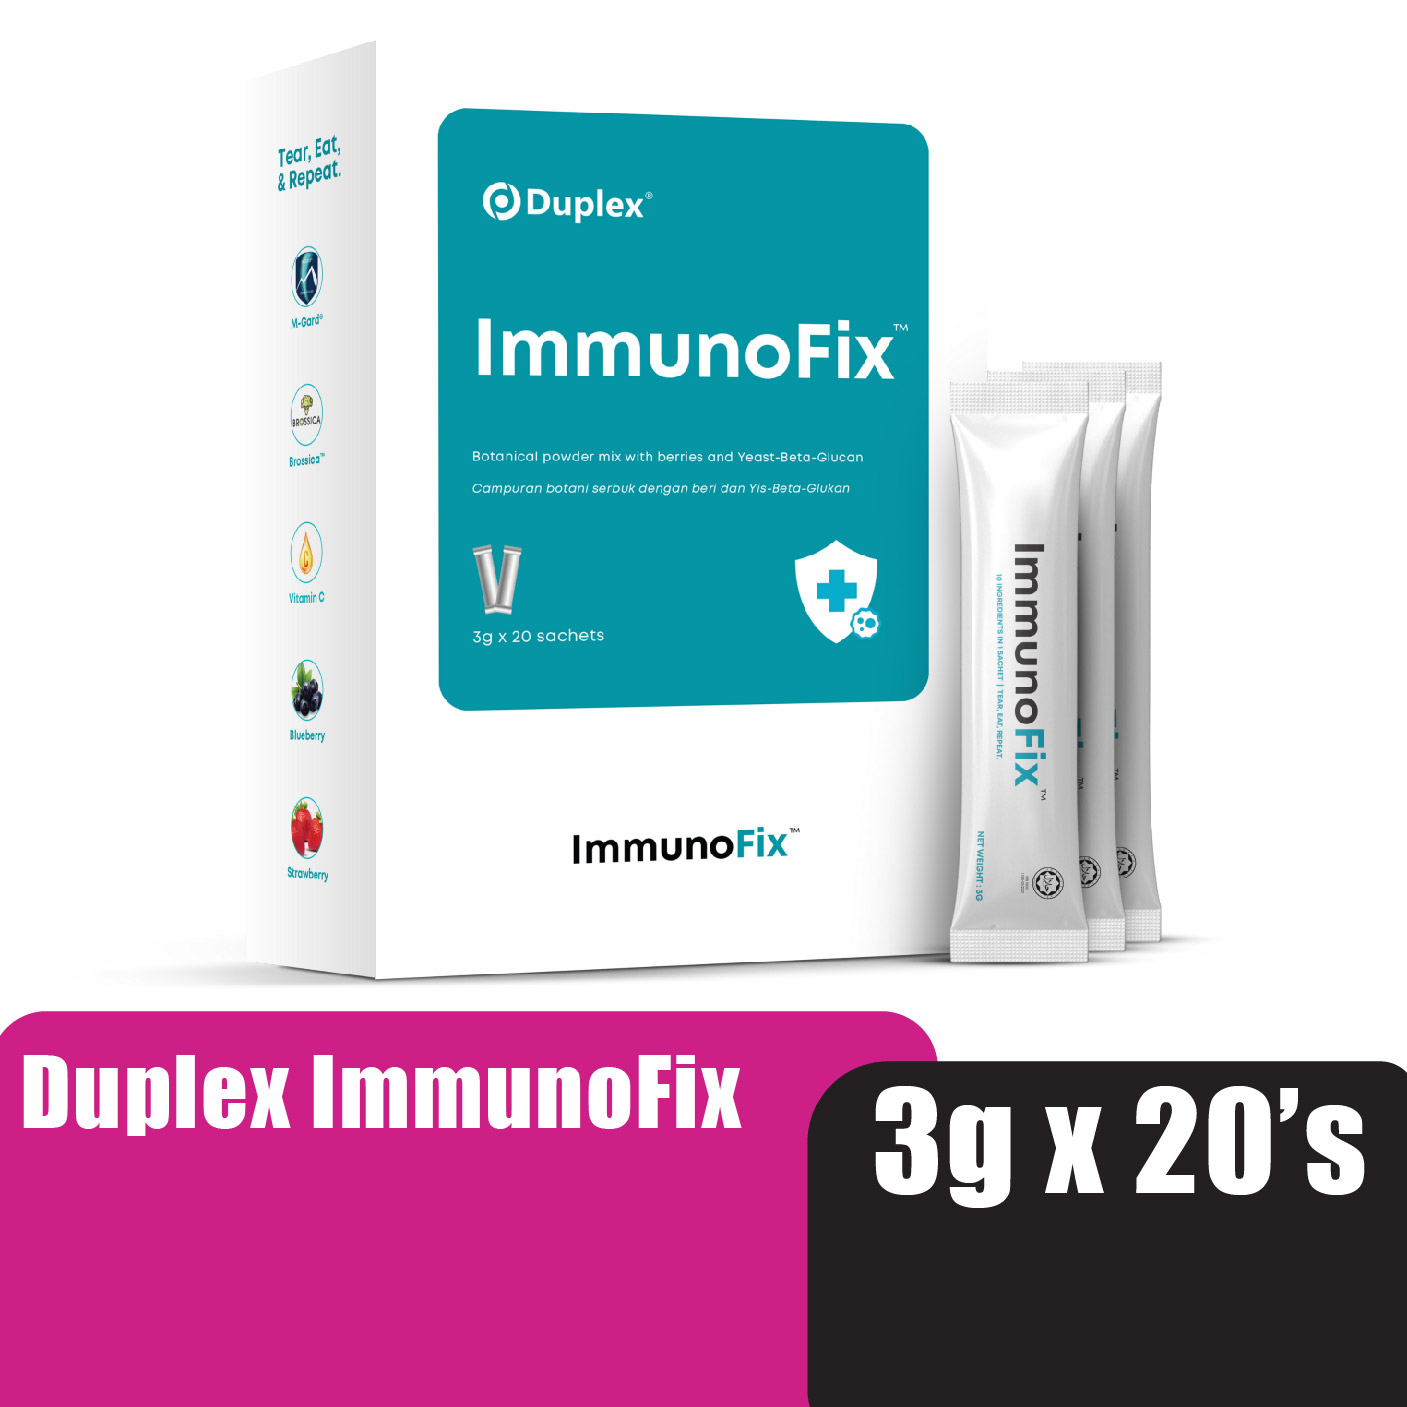 Duplex Immunofix 20's contains rich berries, yeast beta glucan (immune booster)